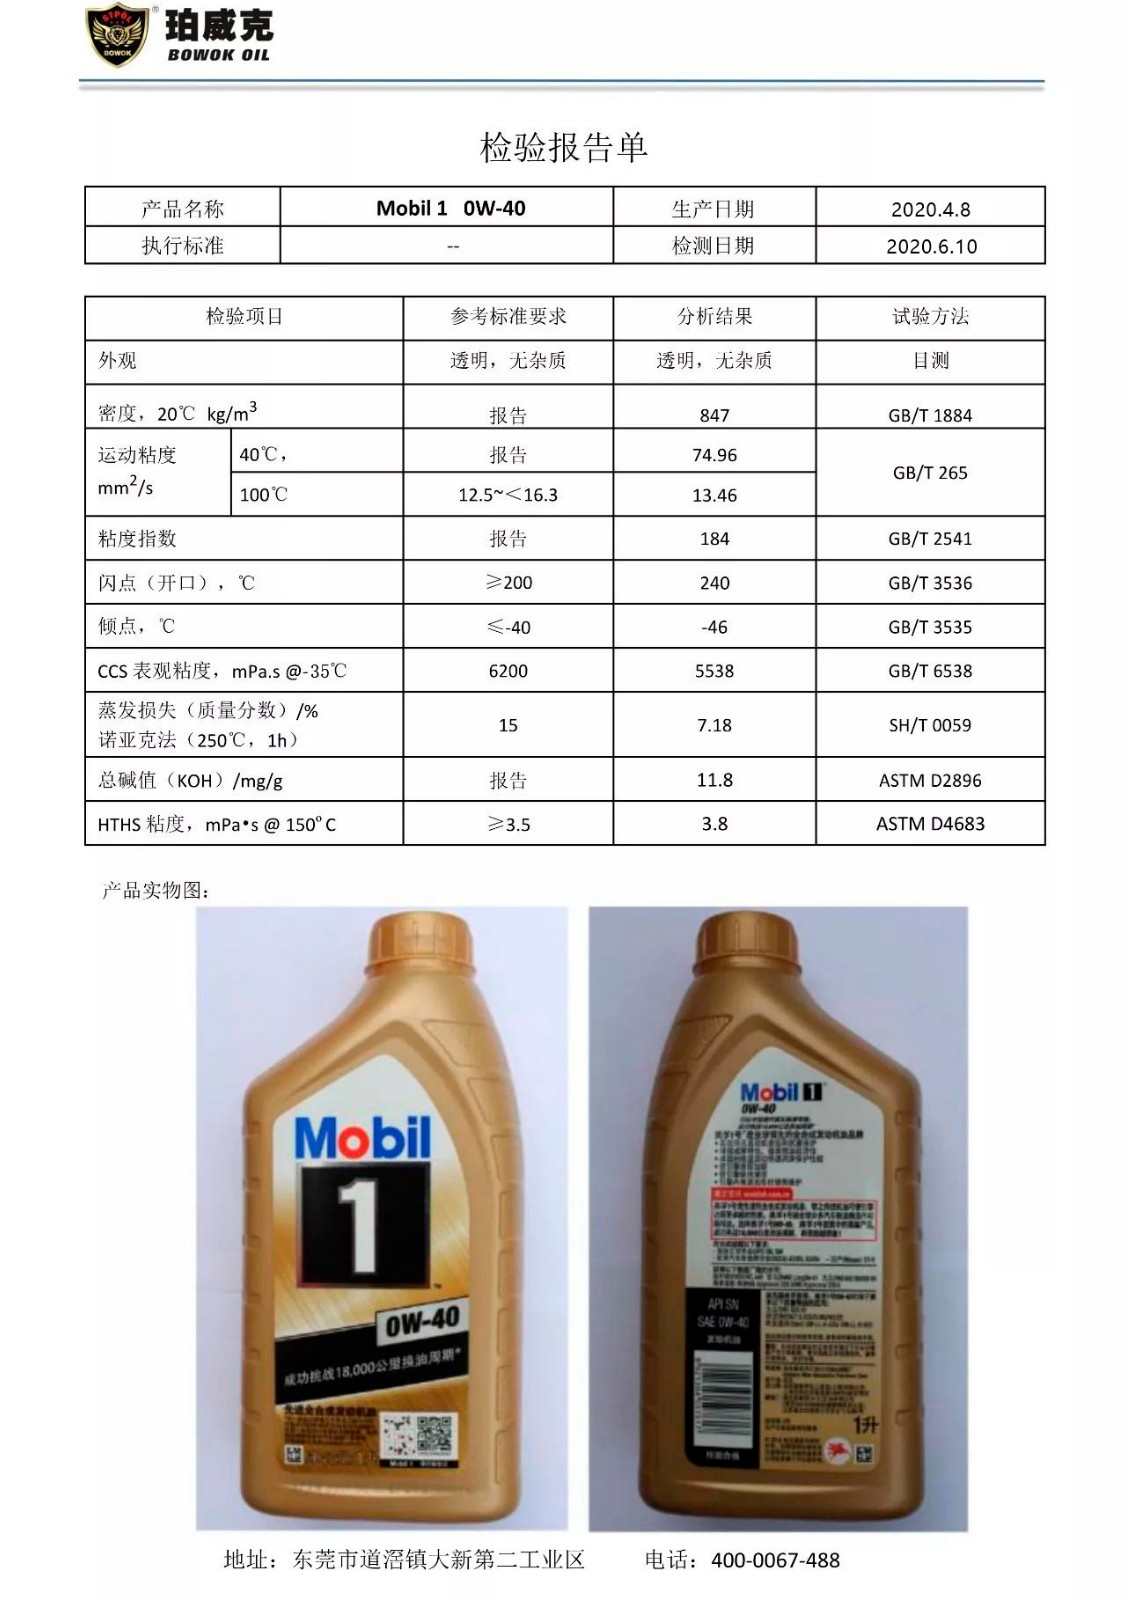 【产品】珀威克及美嘉壳产品指标对比